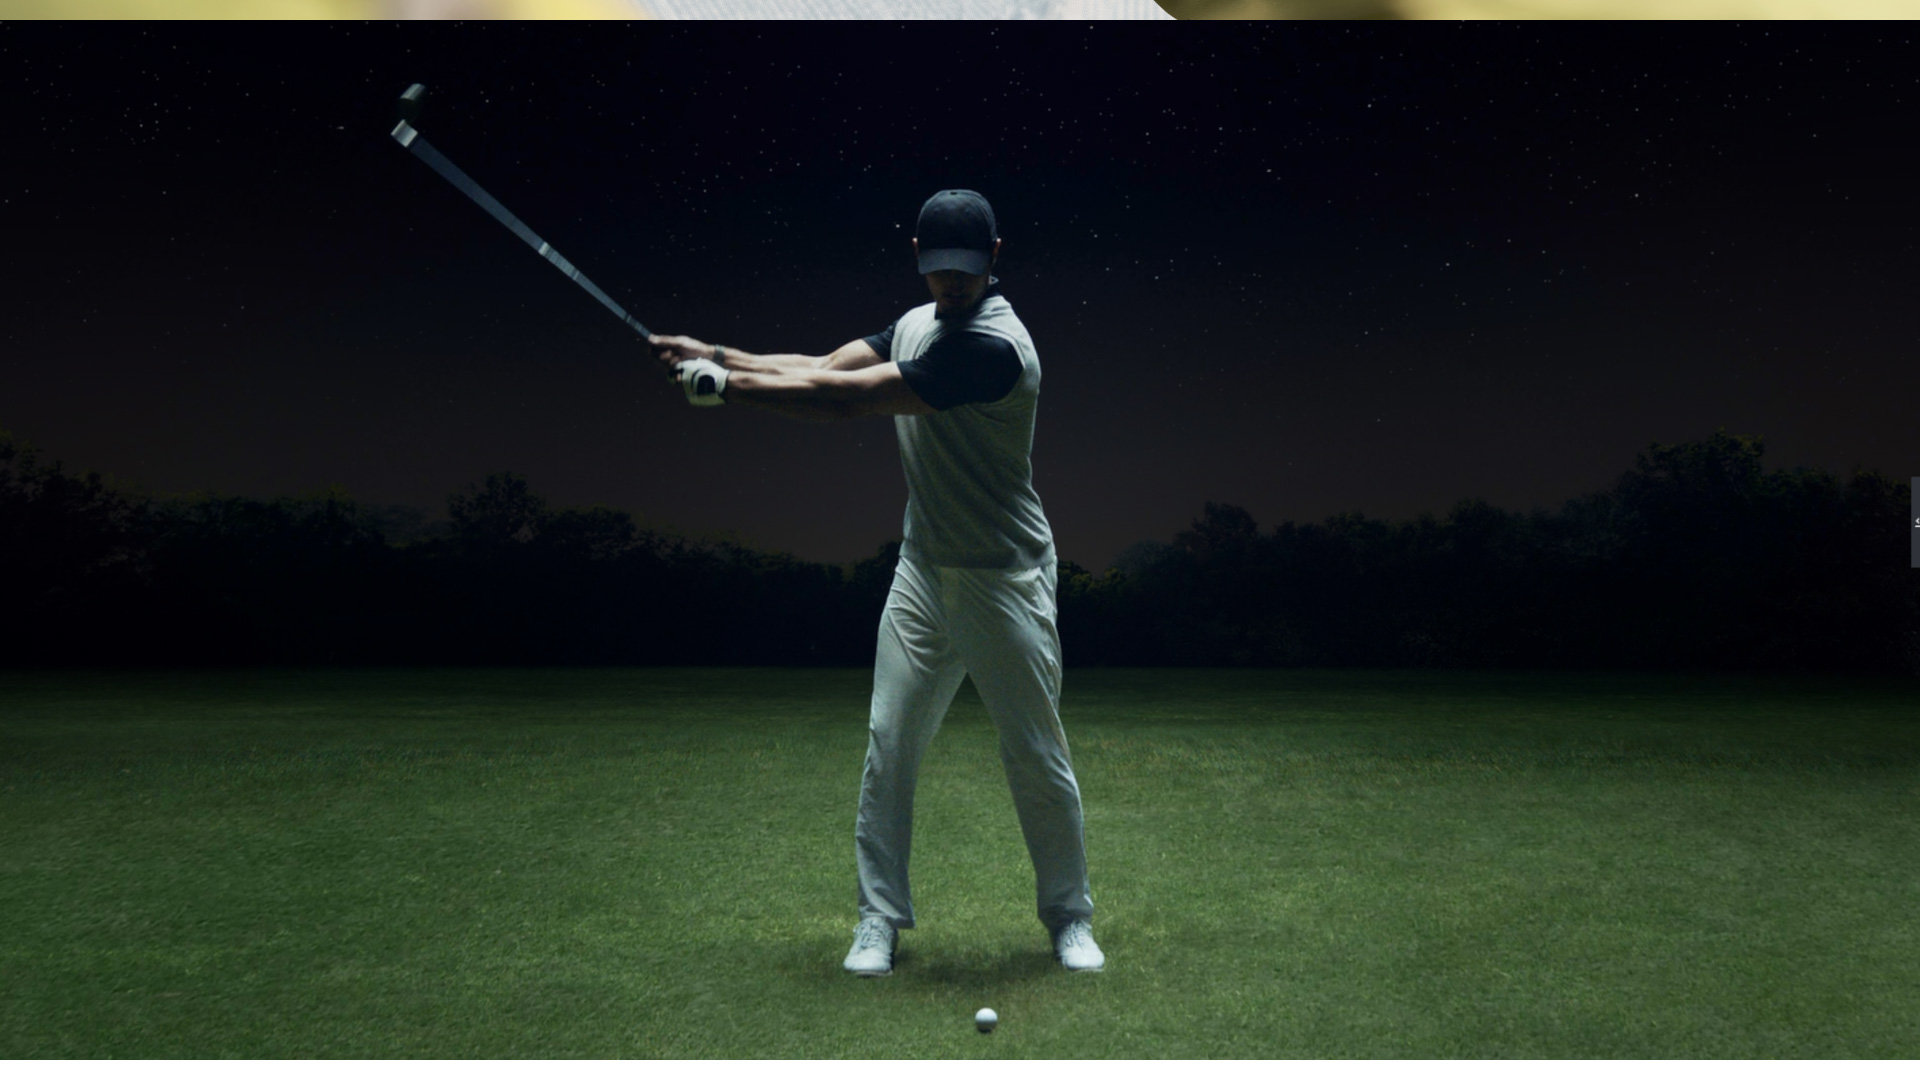 Smartwatch HES WATCH GT 2 Pro Szary widok na użytkownika smartwatcha grającego w golfa - przedstawienie funkcji asystenta golfowego